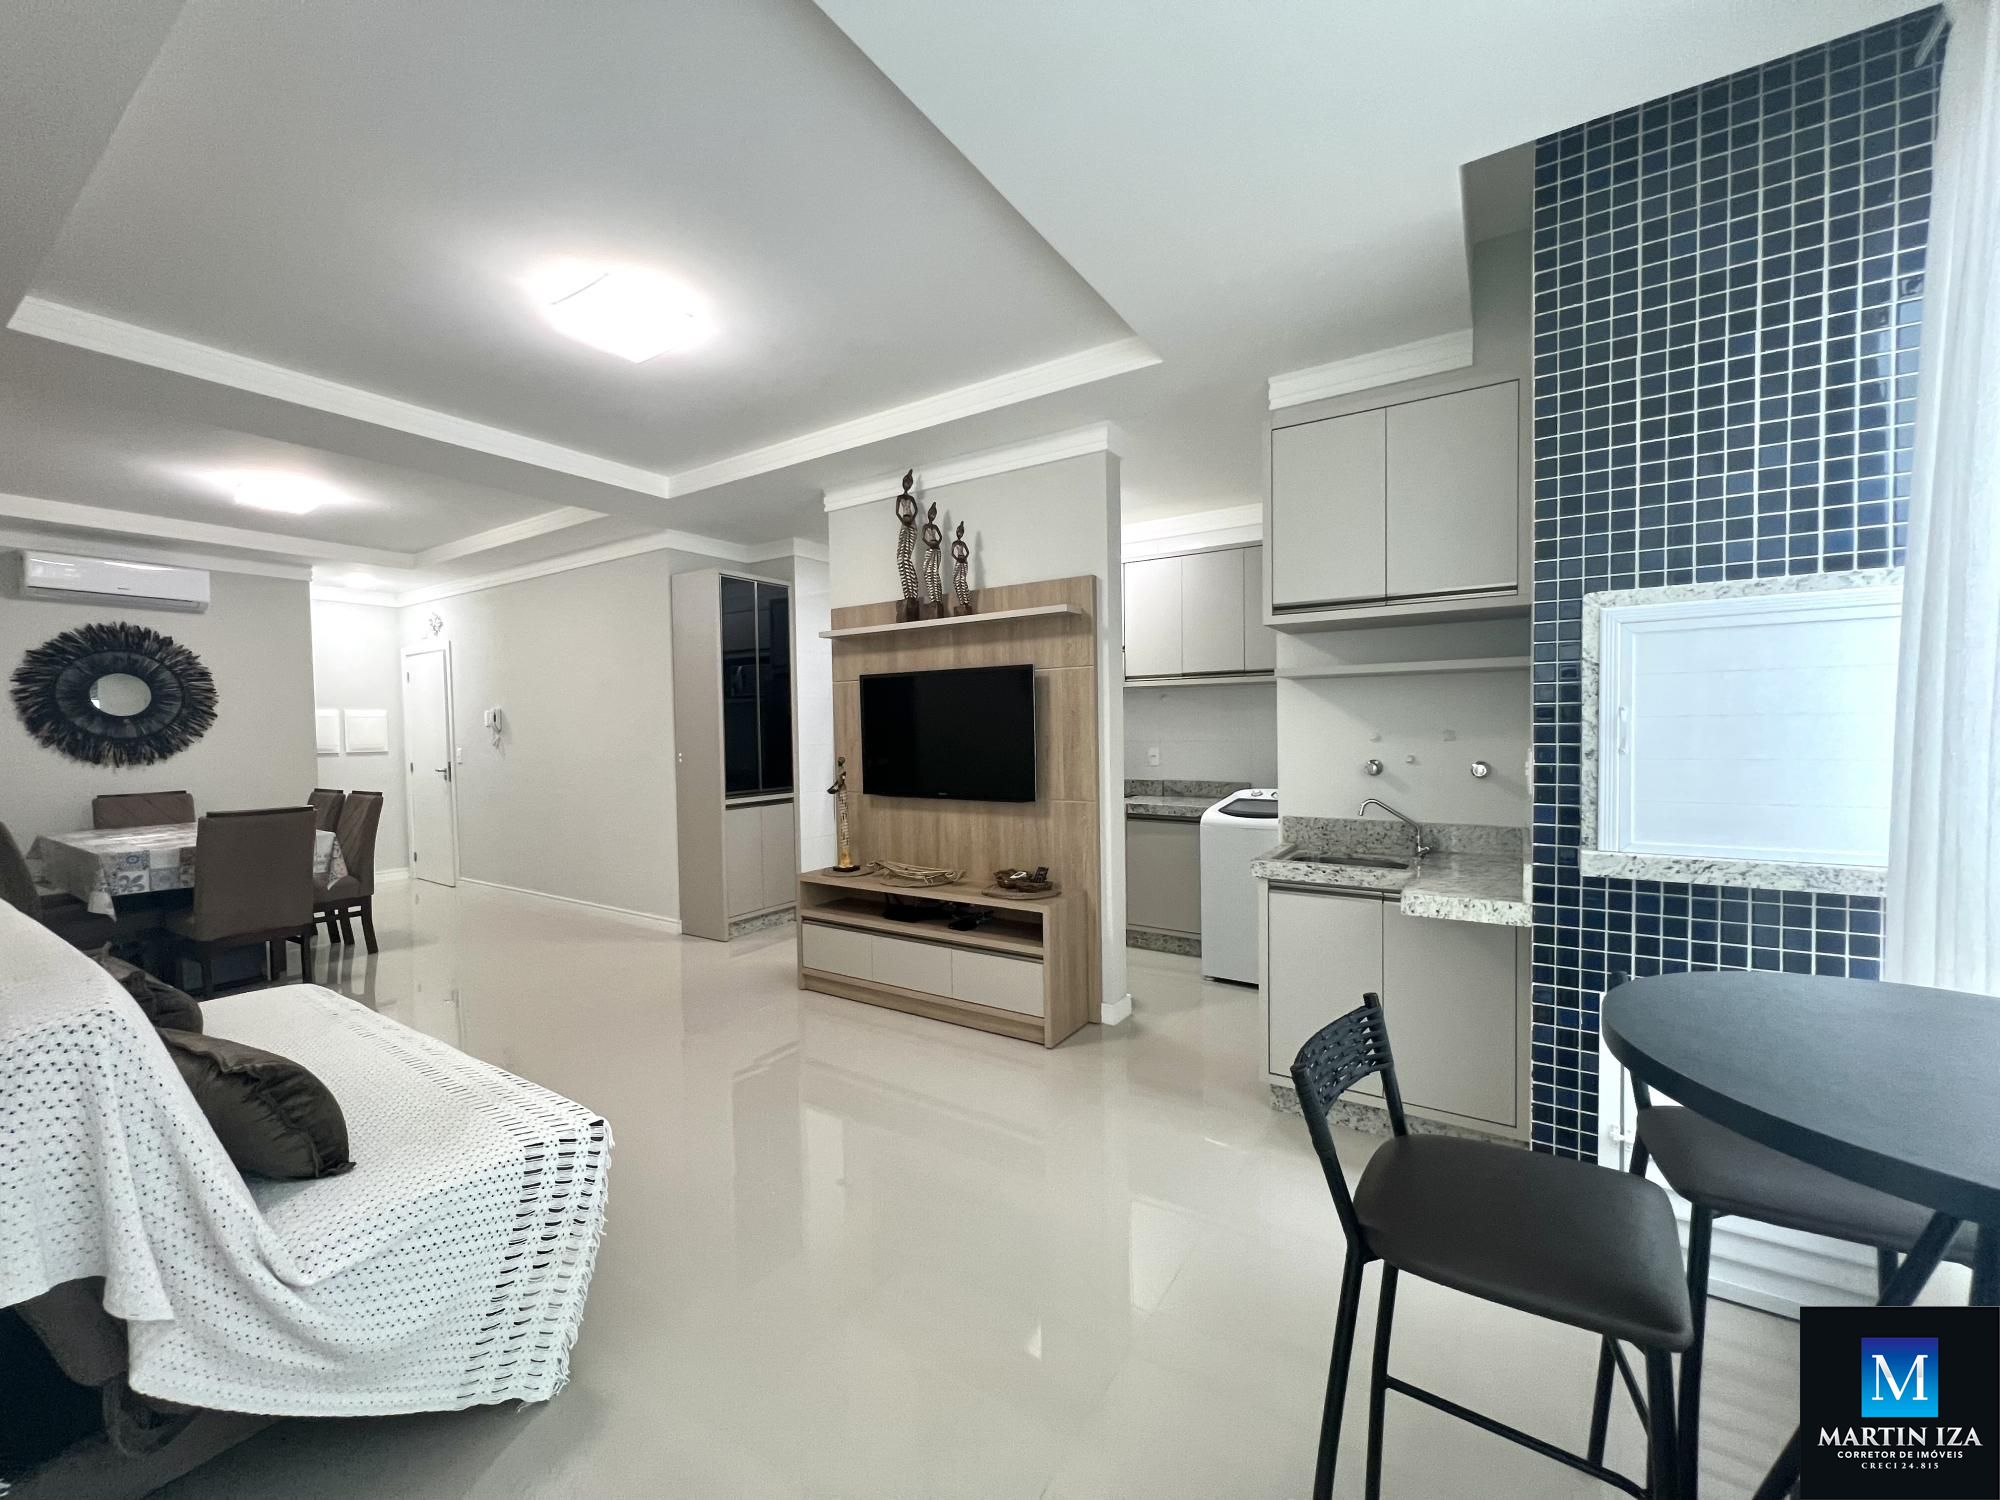 Apartamento com 2 Dormitórios para alugar, 75 m² por R$ 280,00